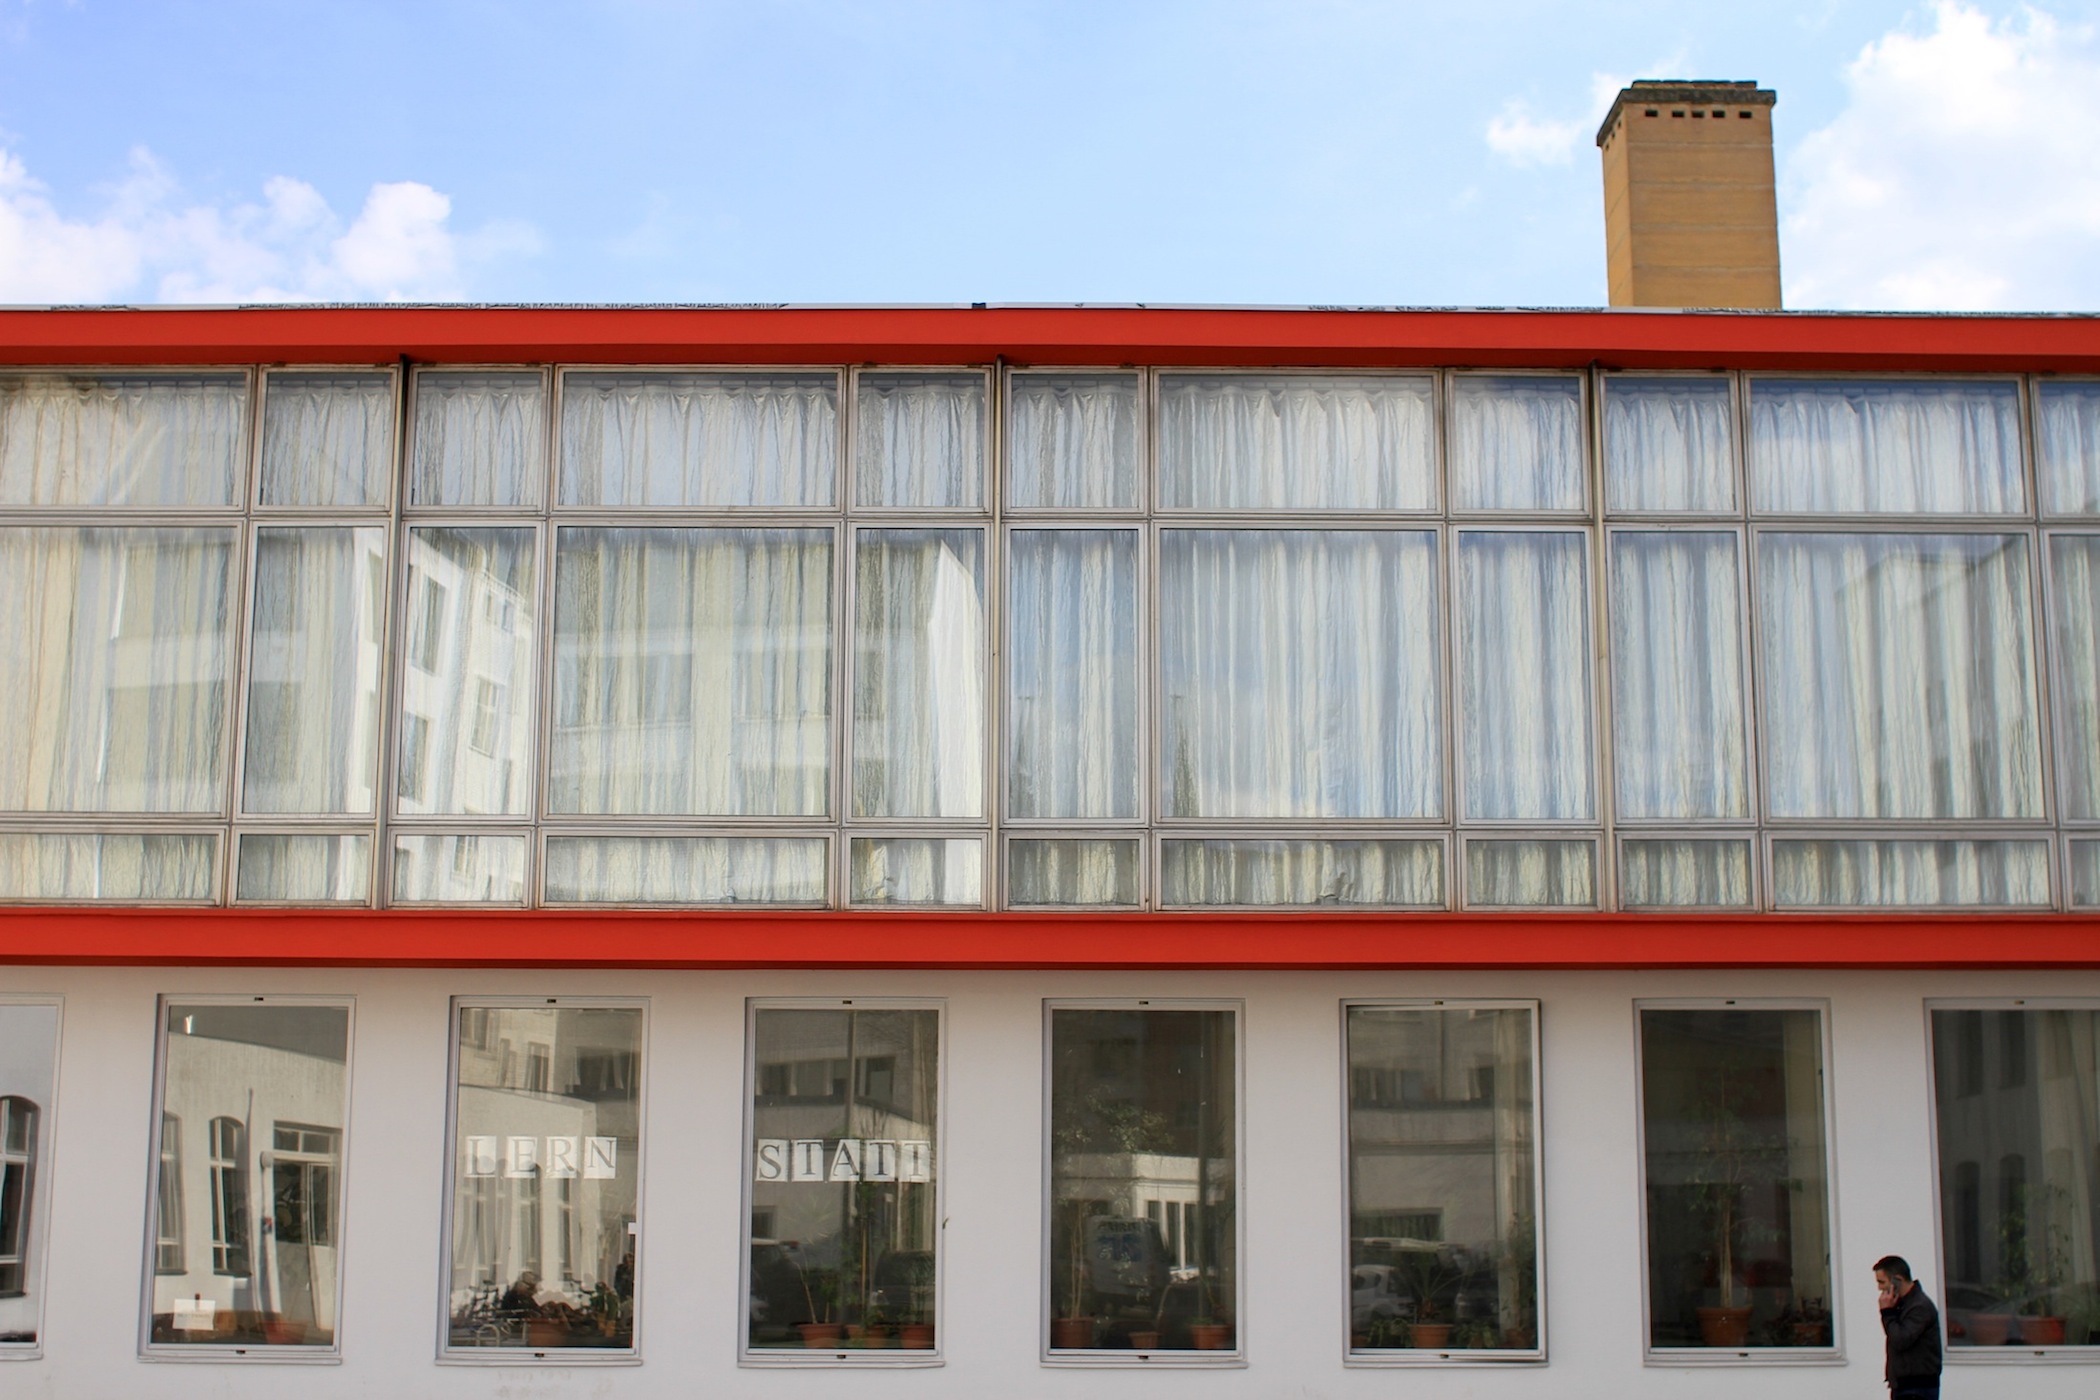 Der erste architektonische Eingriff von Klaus Kirsten bei den Neubauten des Rotaprint-Geländes: das gläserne Zentrum der Firma. Die umlaufende rote Rahmung der Glaskiste entsprach der Farbgebung des Firmenlogos.